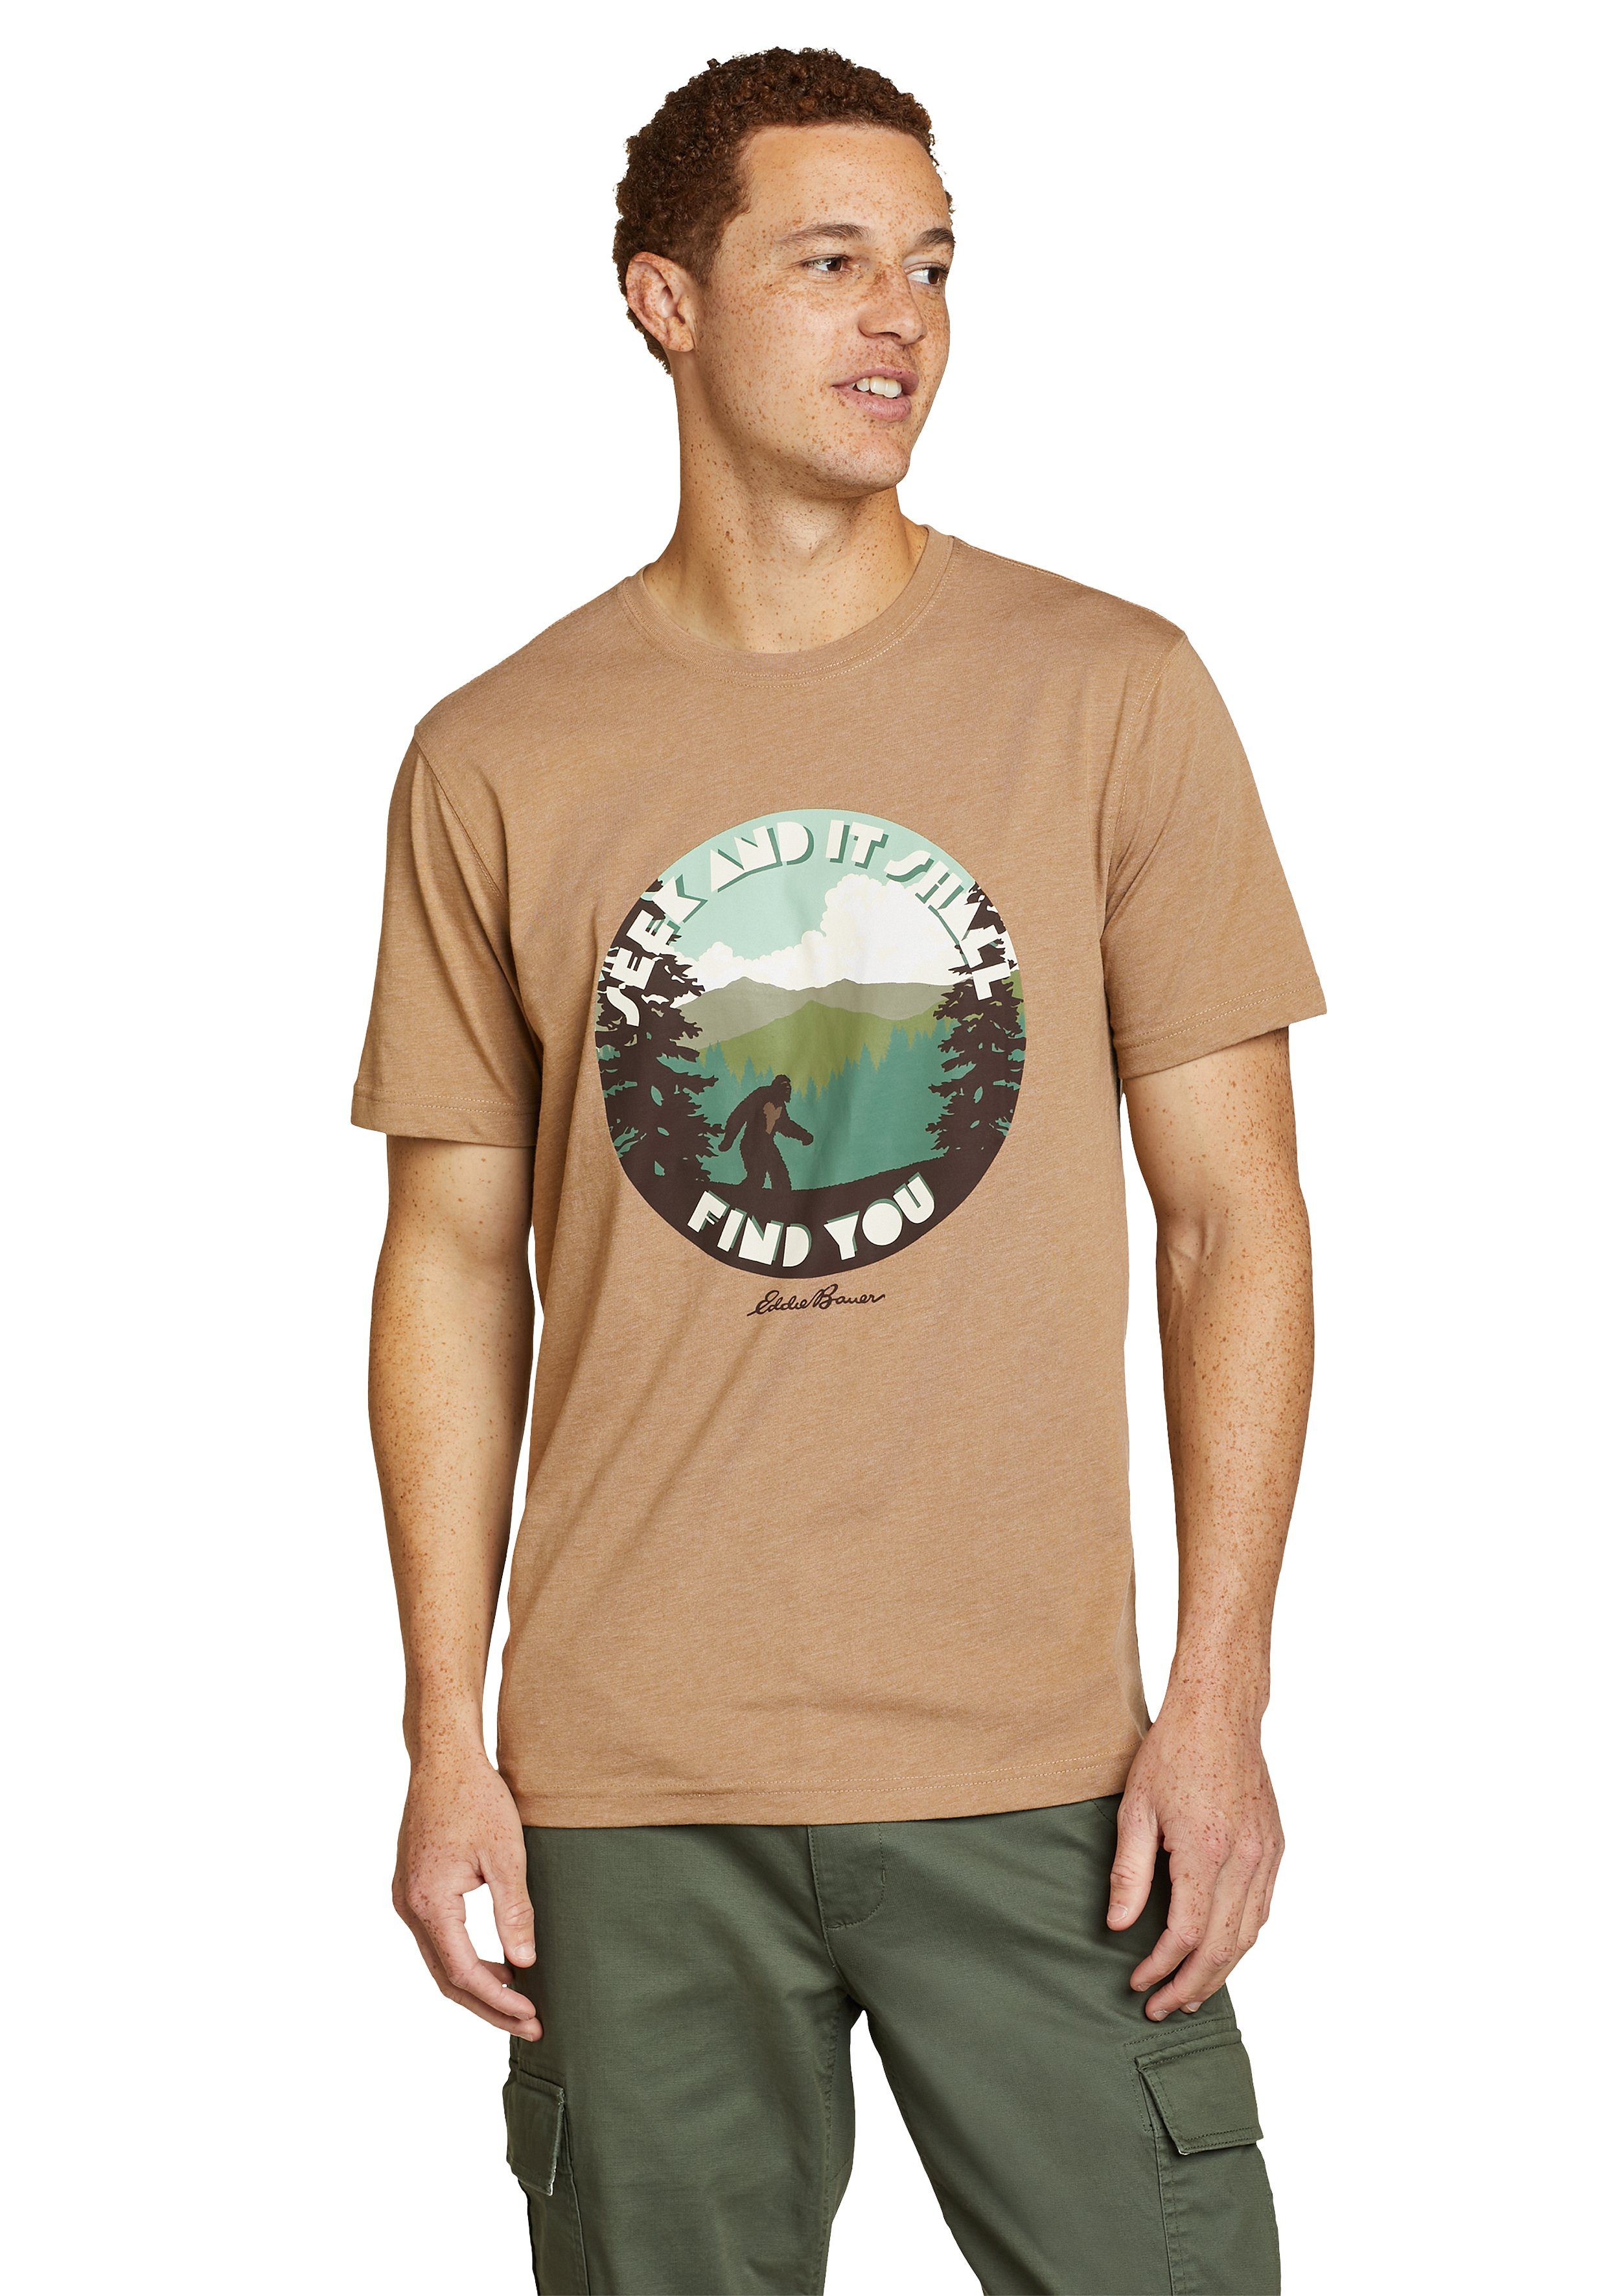 Eddie Bauer T-Shirt Graphic T-Shirt Squatch Seek and Find